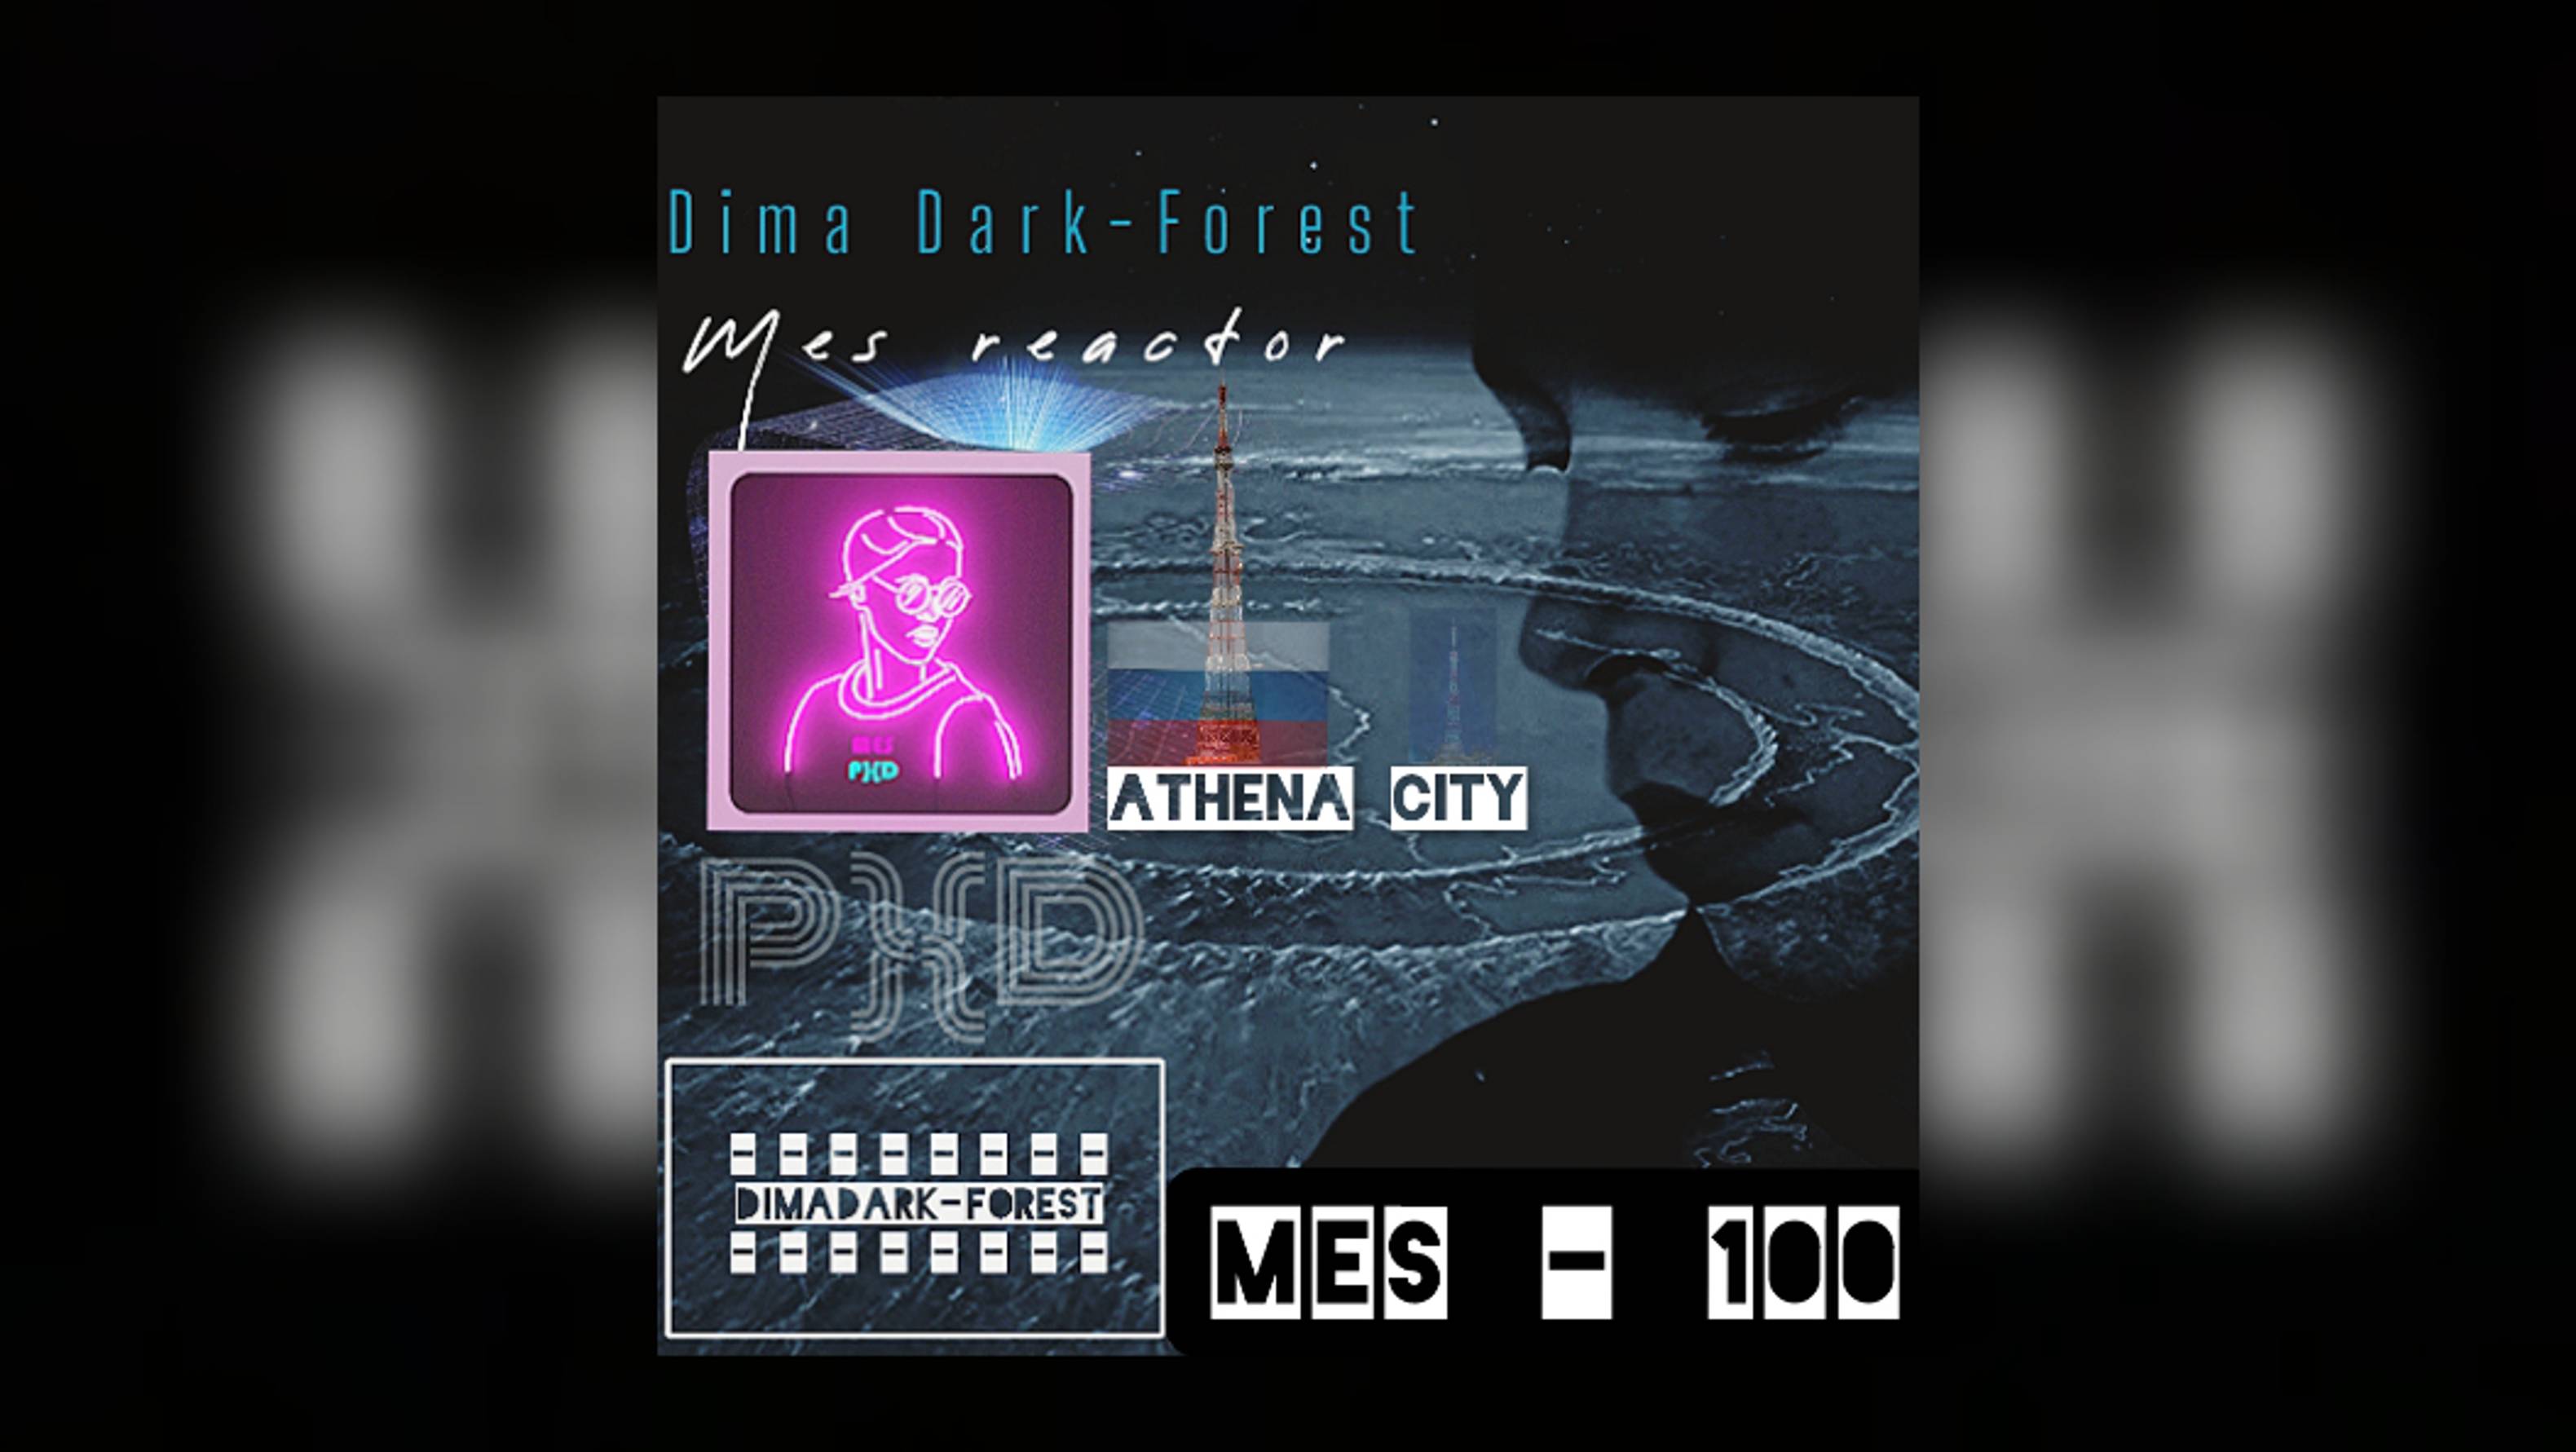 Mes - 100 | Athena city